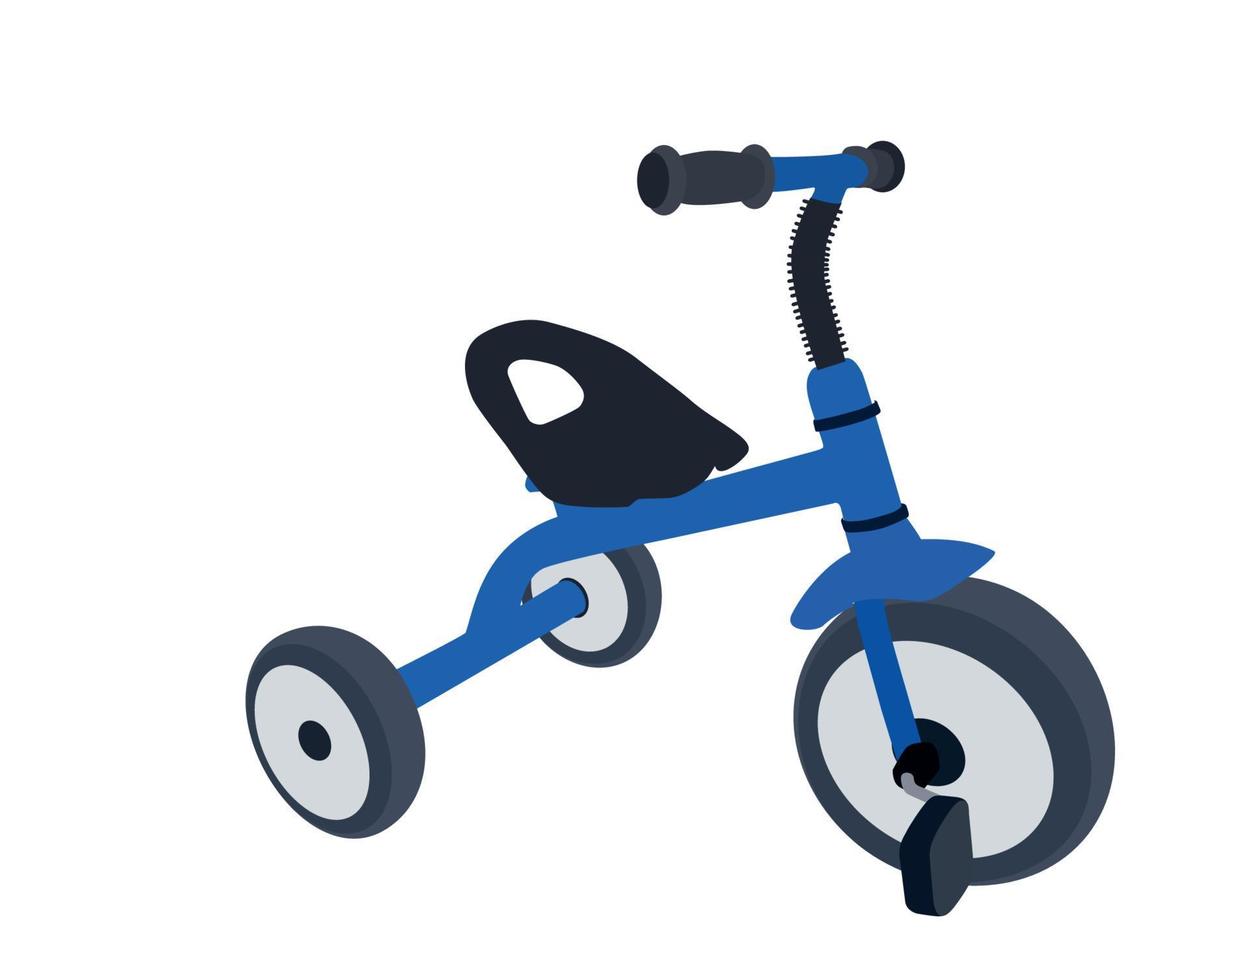 Bicicleta infantil de tres ruedas. aislado vector